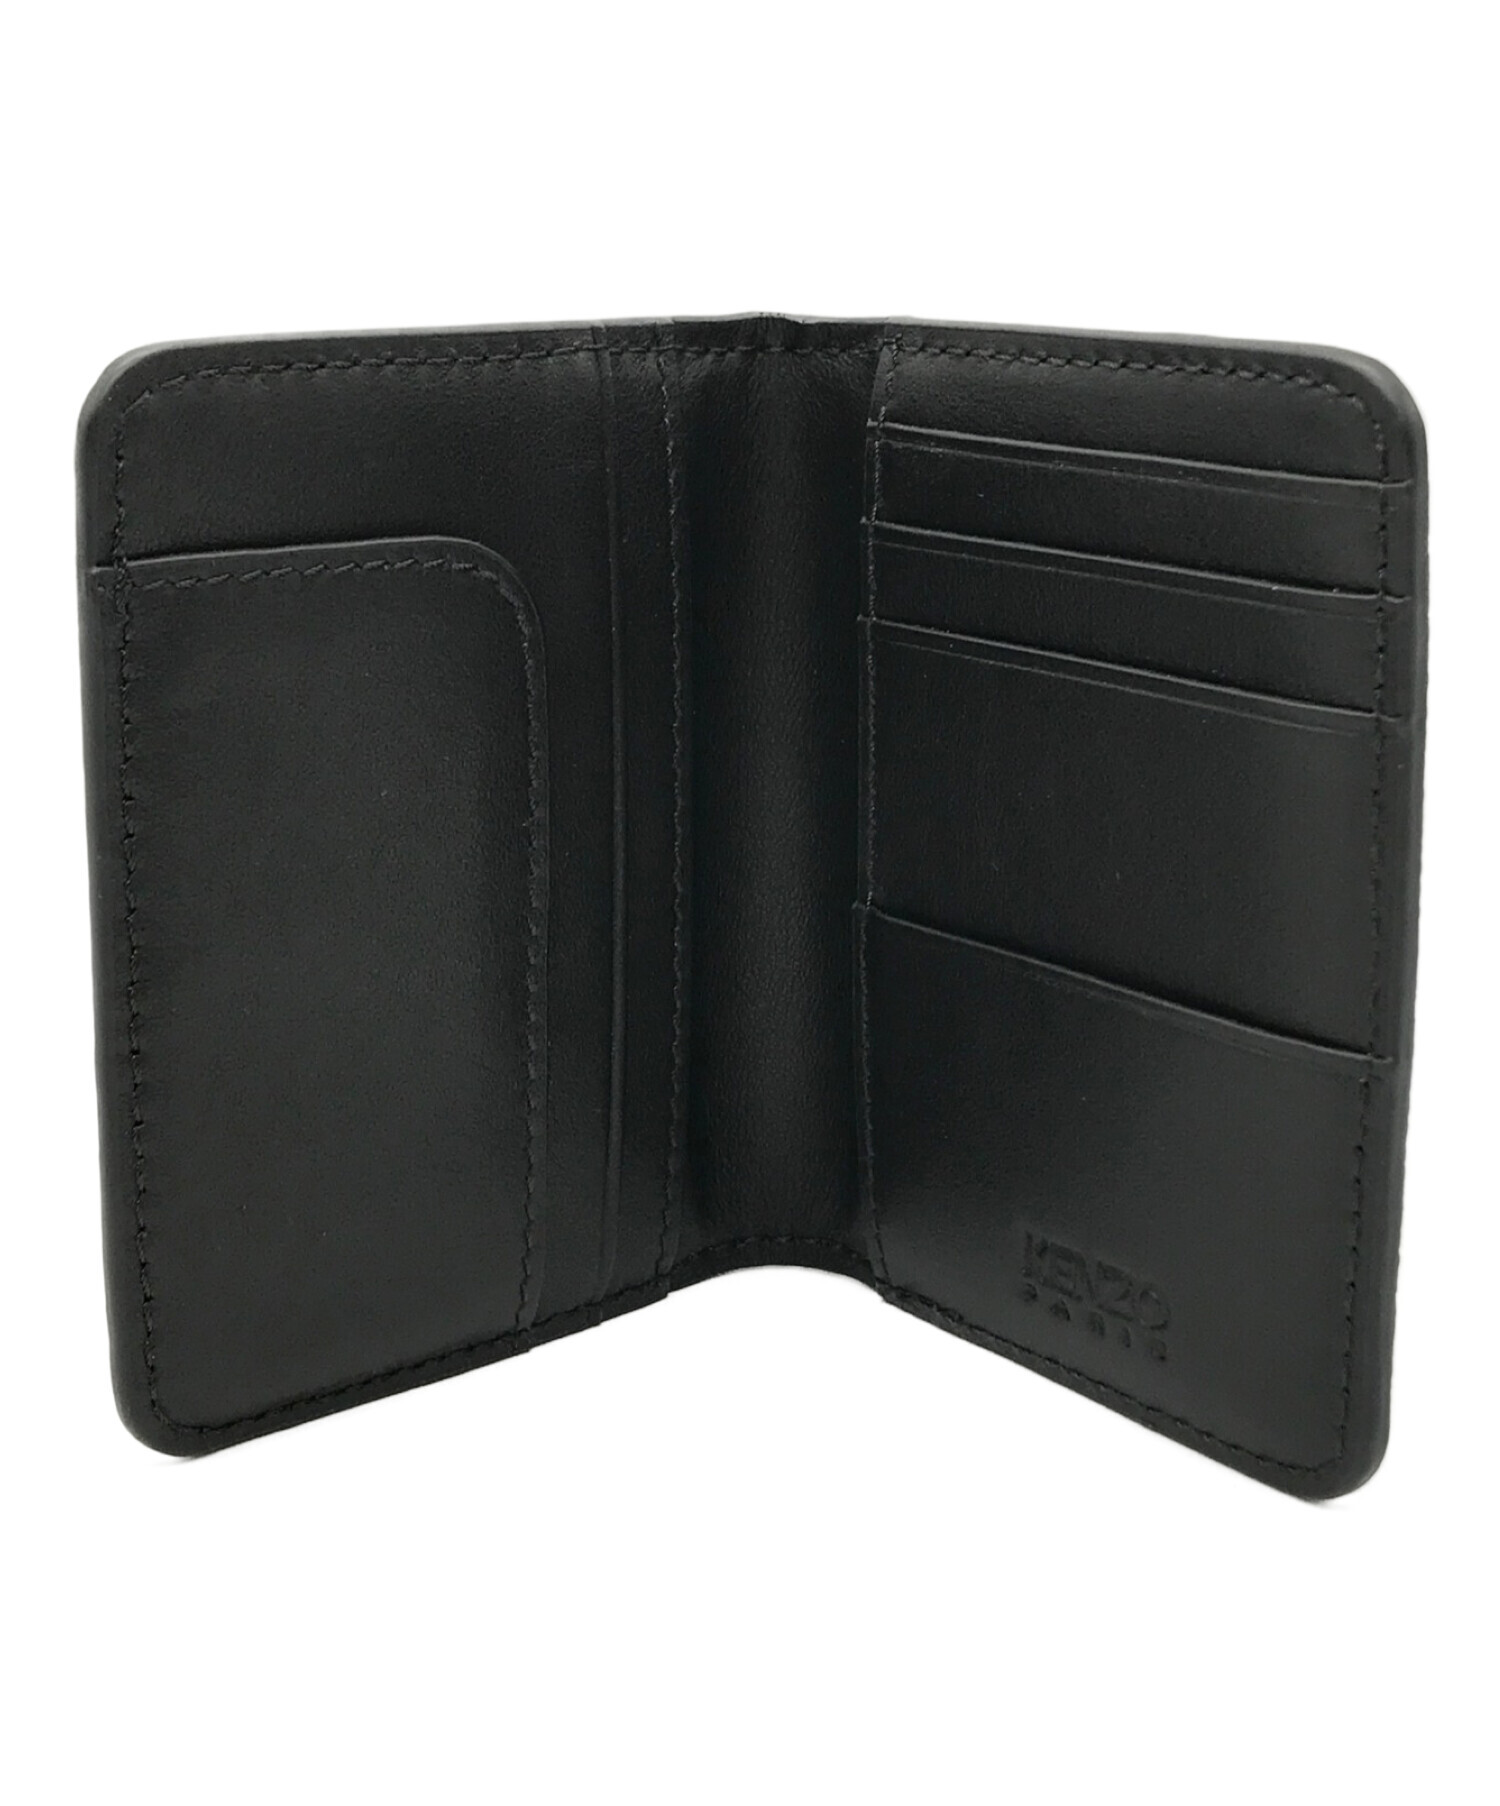 人気の新作 KENZO カードケース 未使用 折りたたみ 財布・ケース・小物 